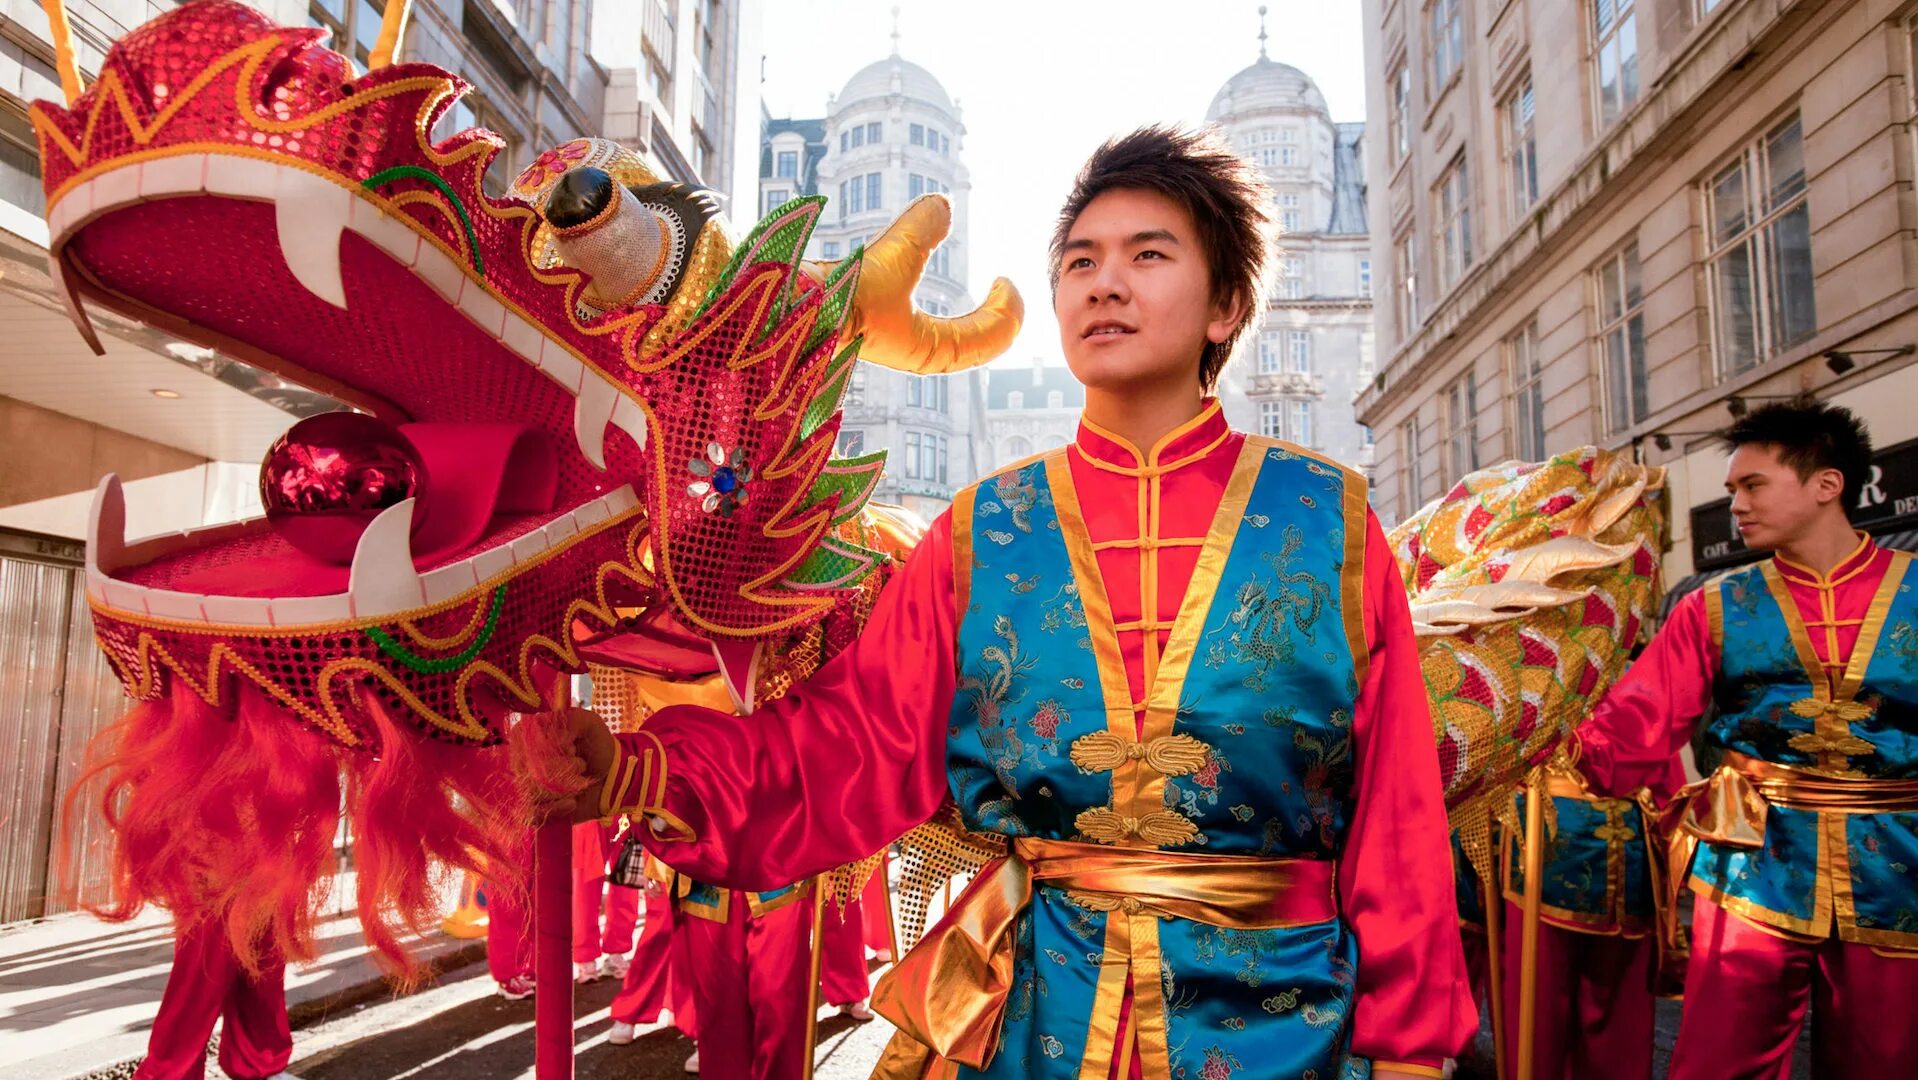 Праздники в Китае. Китайский фестиваль. Праздничный дракон в Китае. Китайские праздники нерабочие. 4 6 апреля праздник в китае